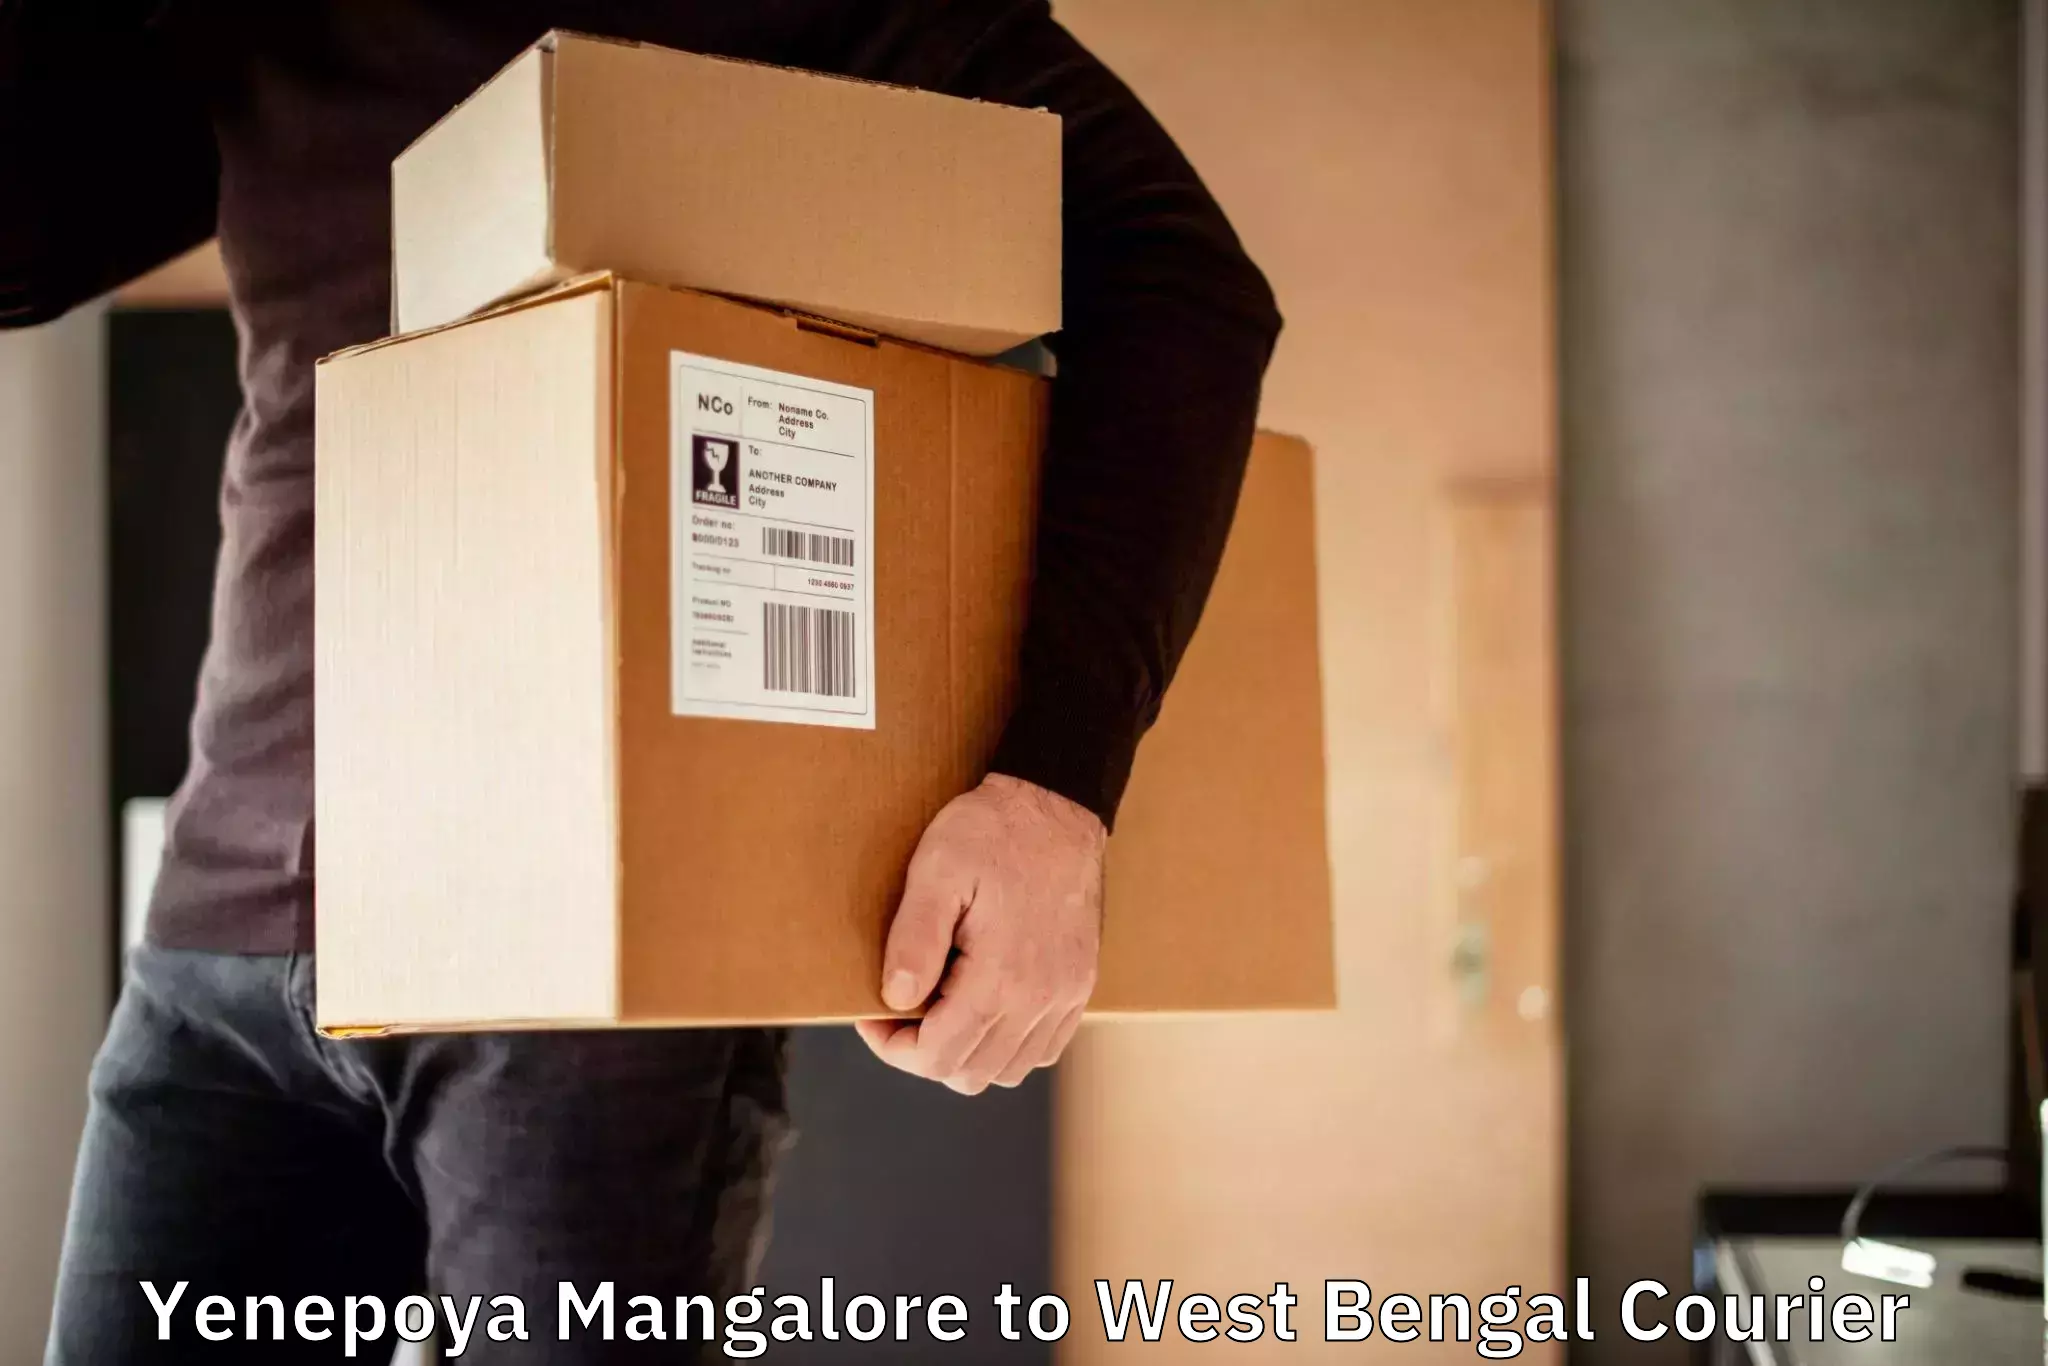 Professional courier handling Yenepoya Mangalore to Jalpaiguri